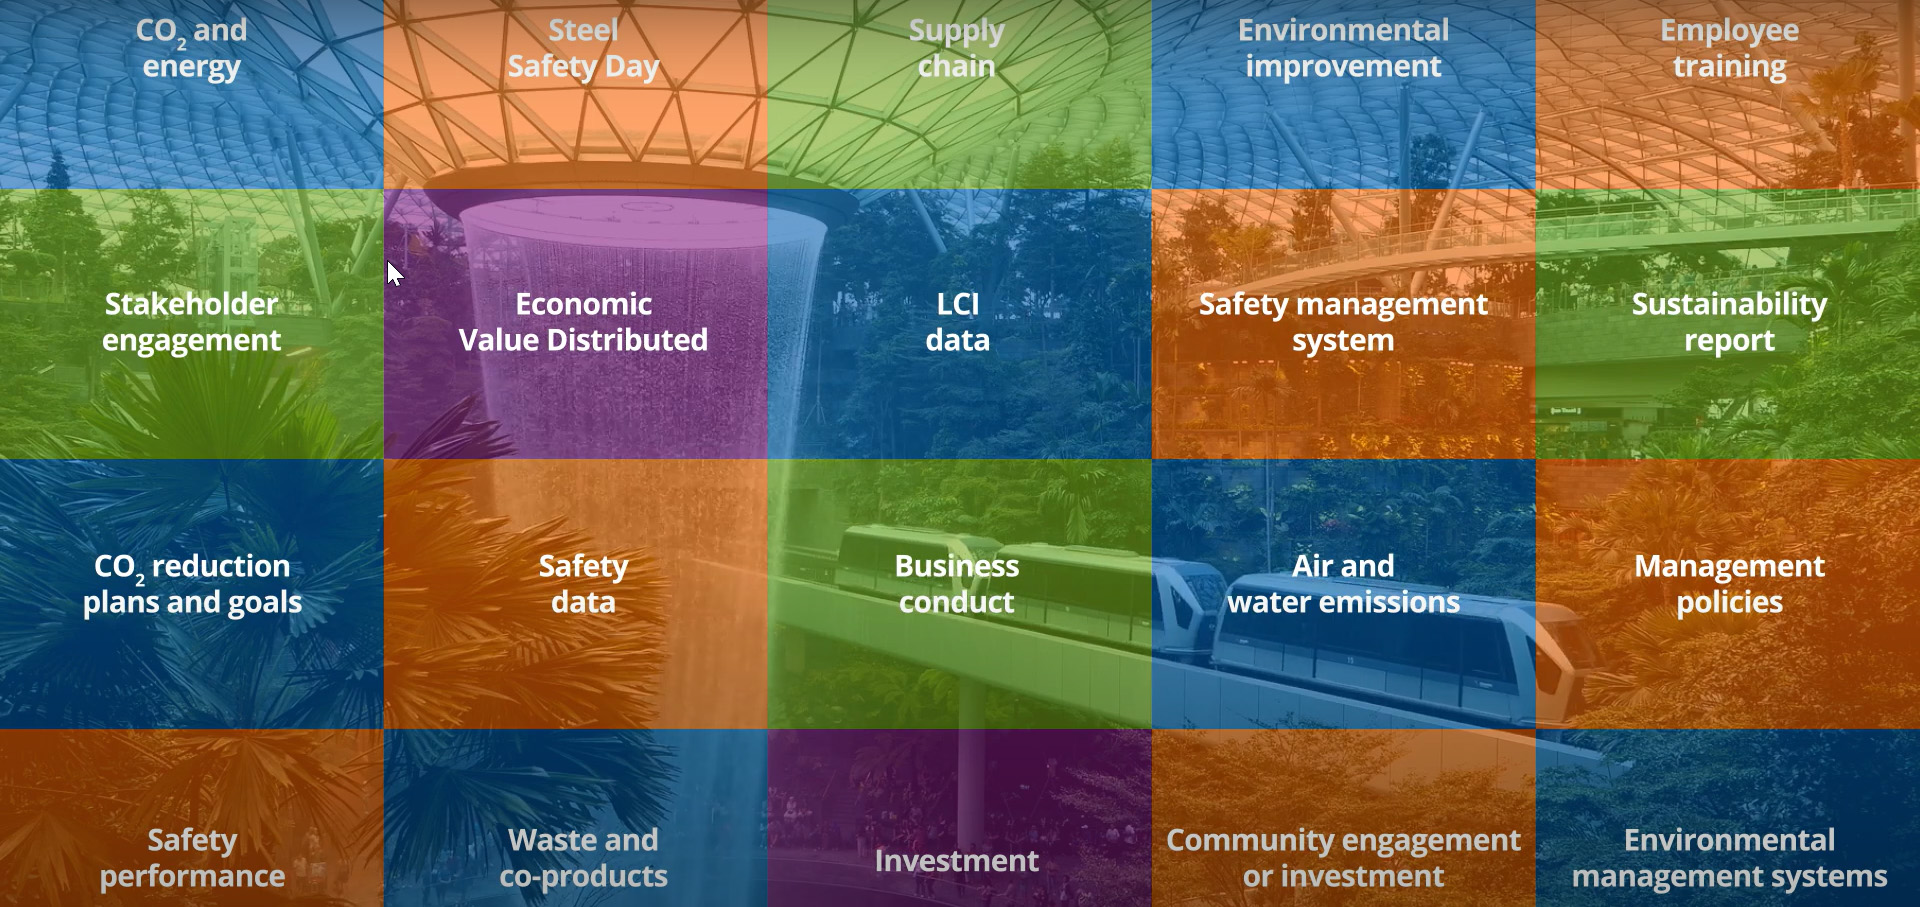 世界钢铁协会发布新版《可持续发展宪章》